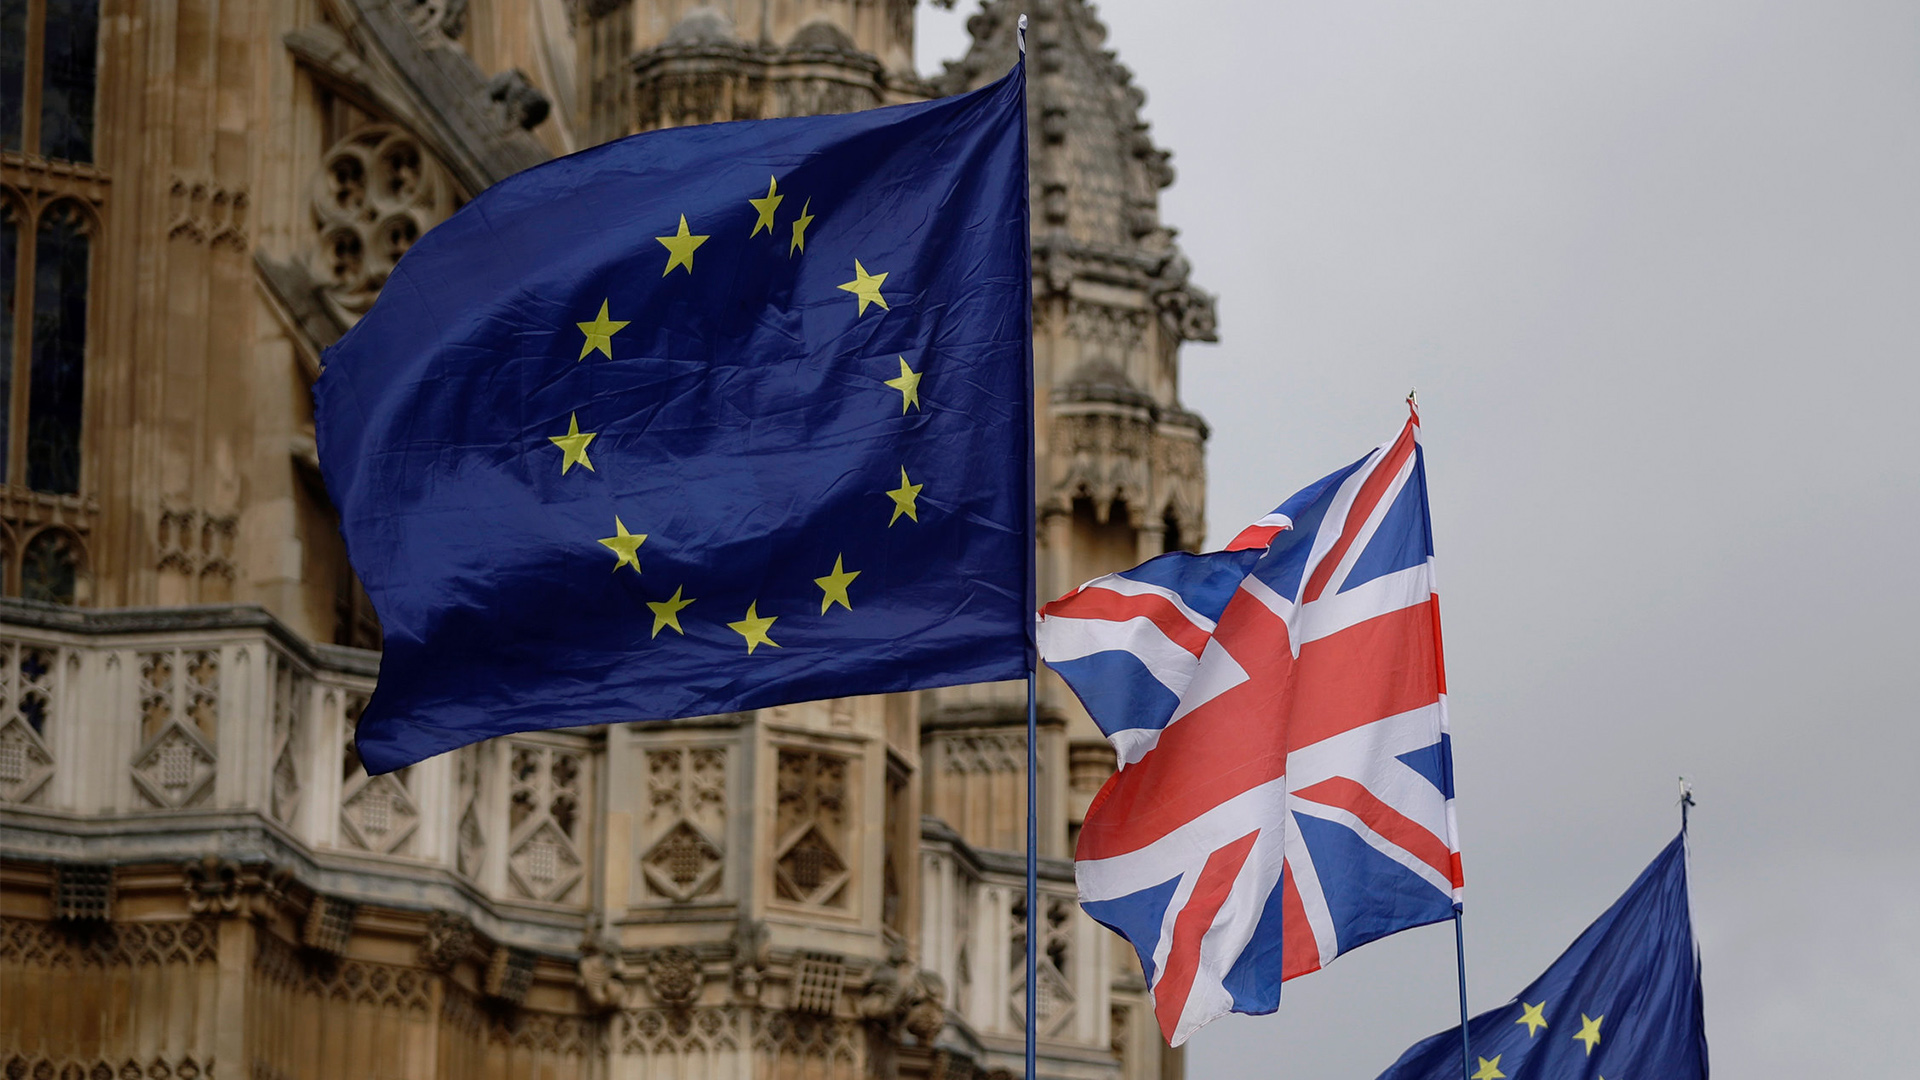 EU Flaggen und Union Jack vorm britischen Parlament | AP